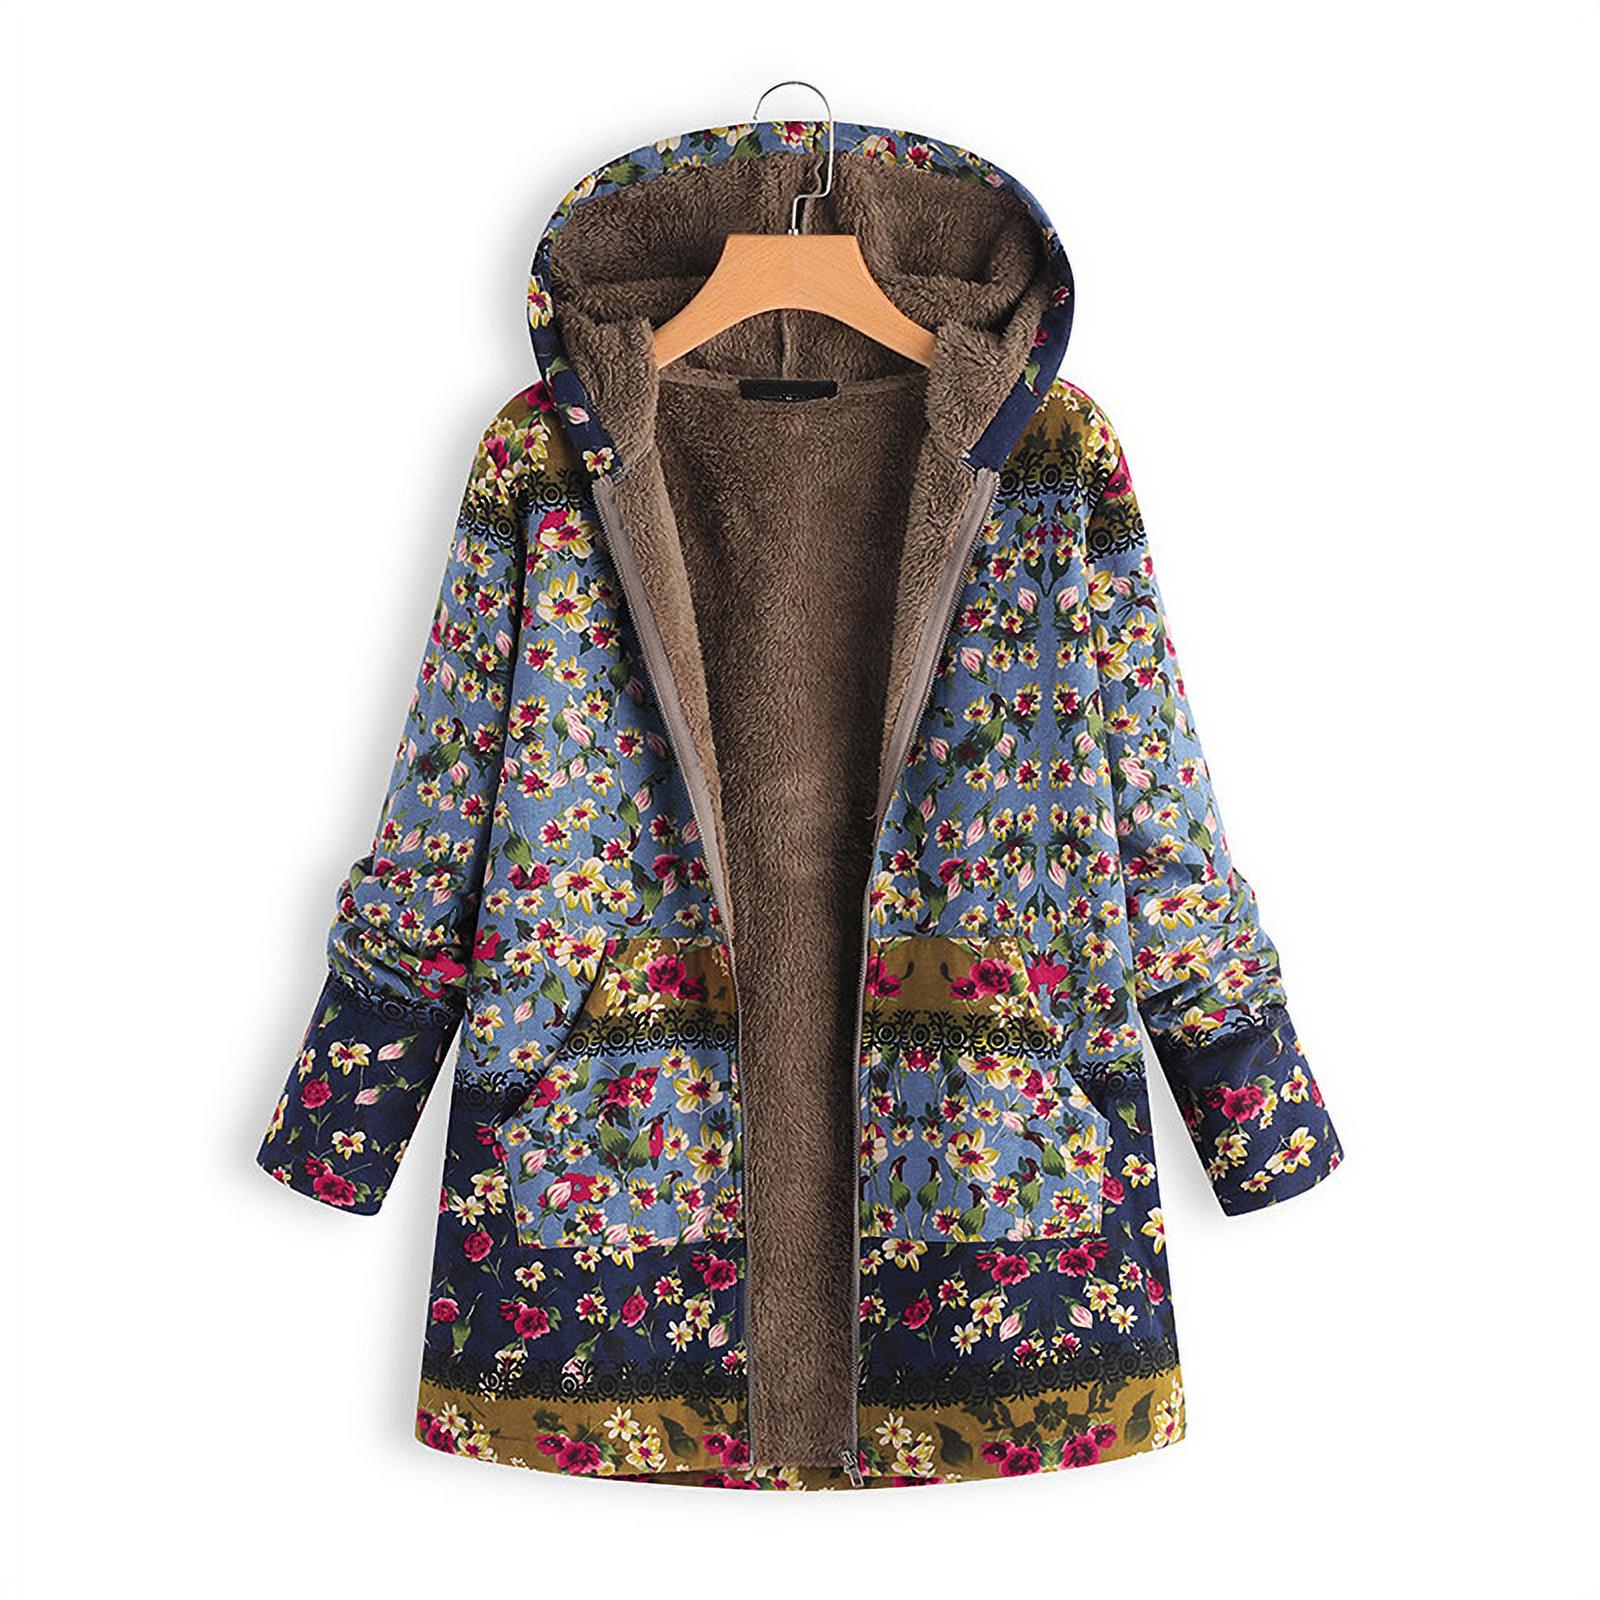 2021 Hot Sale Womens Coat Ladies Long Sleeve Jacket Winter Warm Floral Print Hooded Vintage Overcoat - image 1 of 8